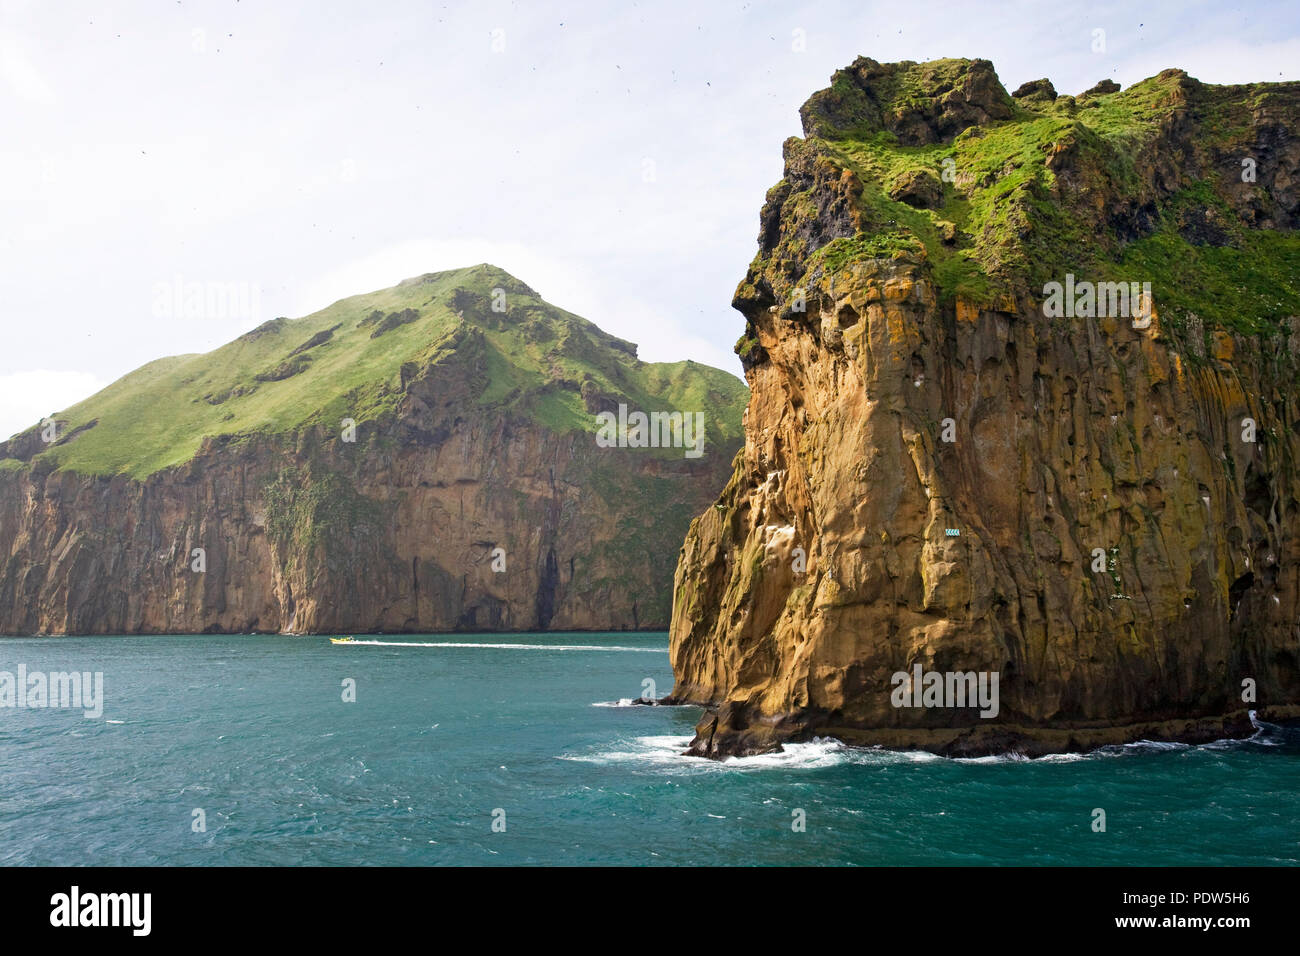 Uccelli marini da migliaia si ergono sulle ripide scogliere di Isola di Heimaey, la più grande isola dell'Arcipelago Vestmannaeyjar, appena al largo della costa meridionale della Foto Stock